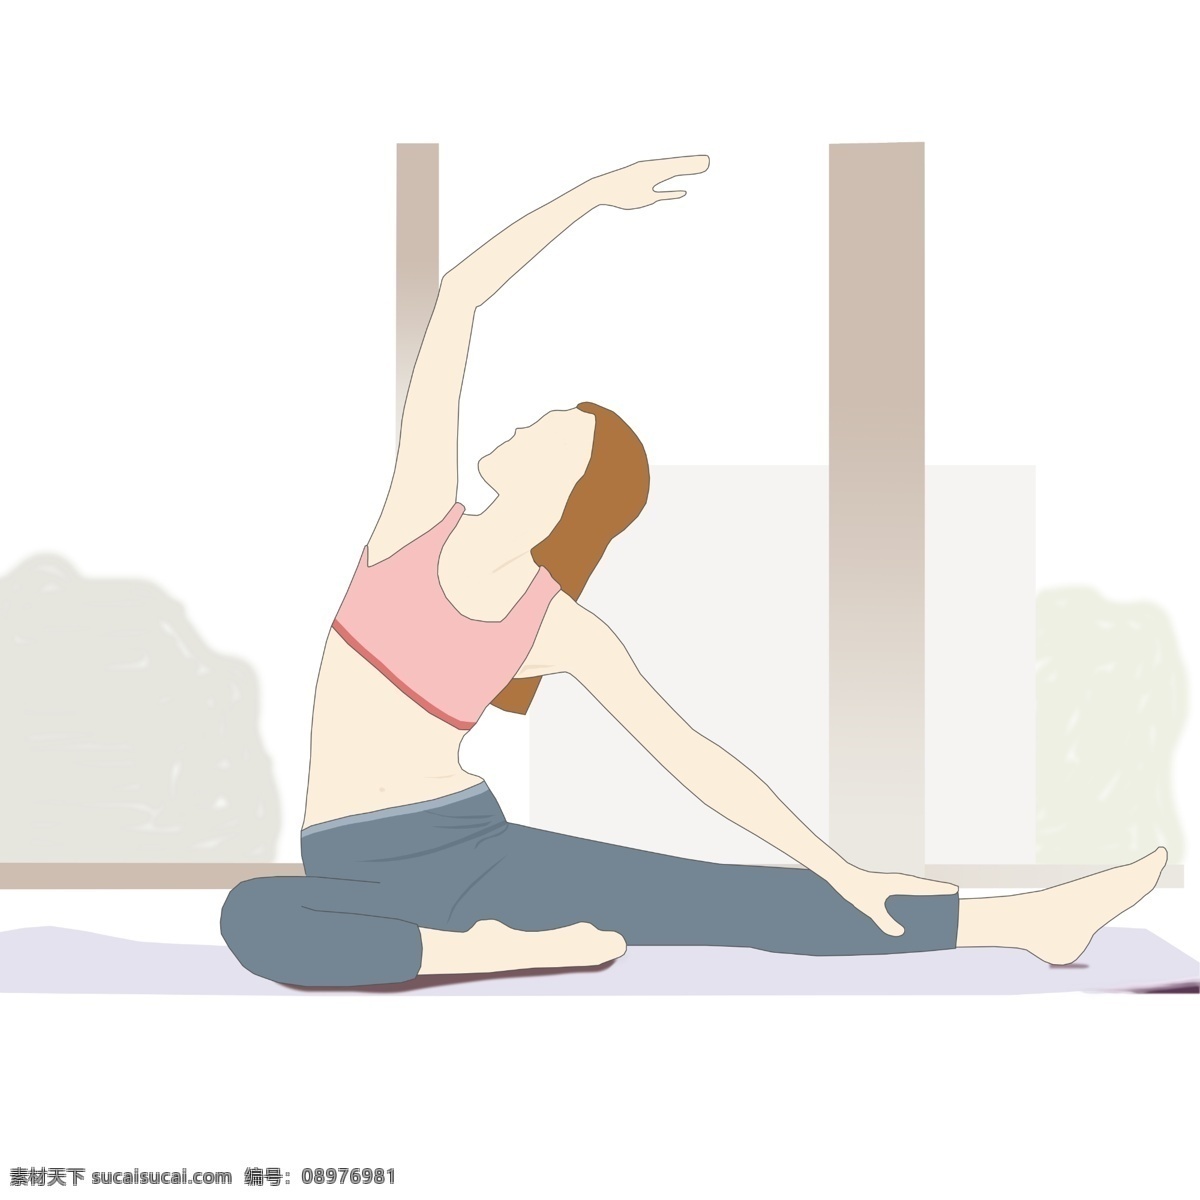 瑜伽 手绘 插画 运动 健身 手绘插画 浅色 练习 女人 改变 生活 开始 锻炼身体